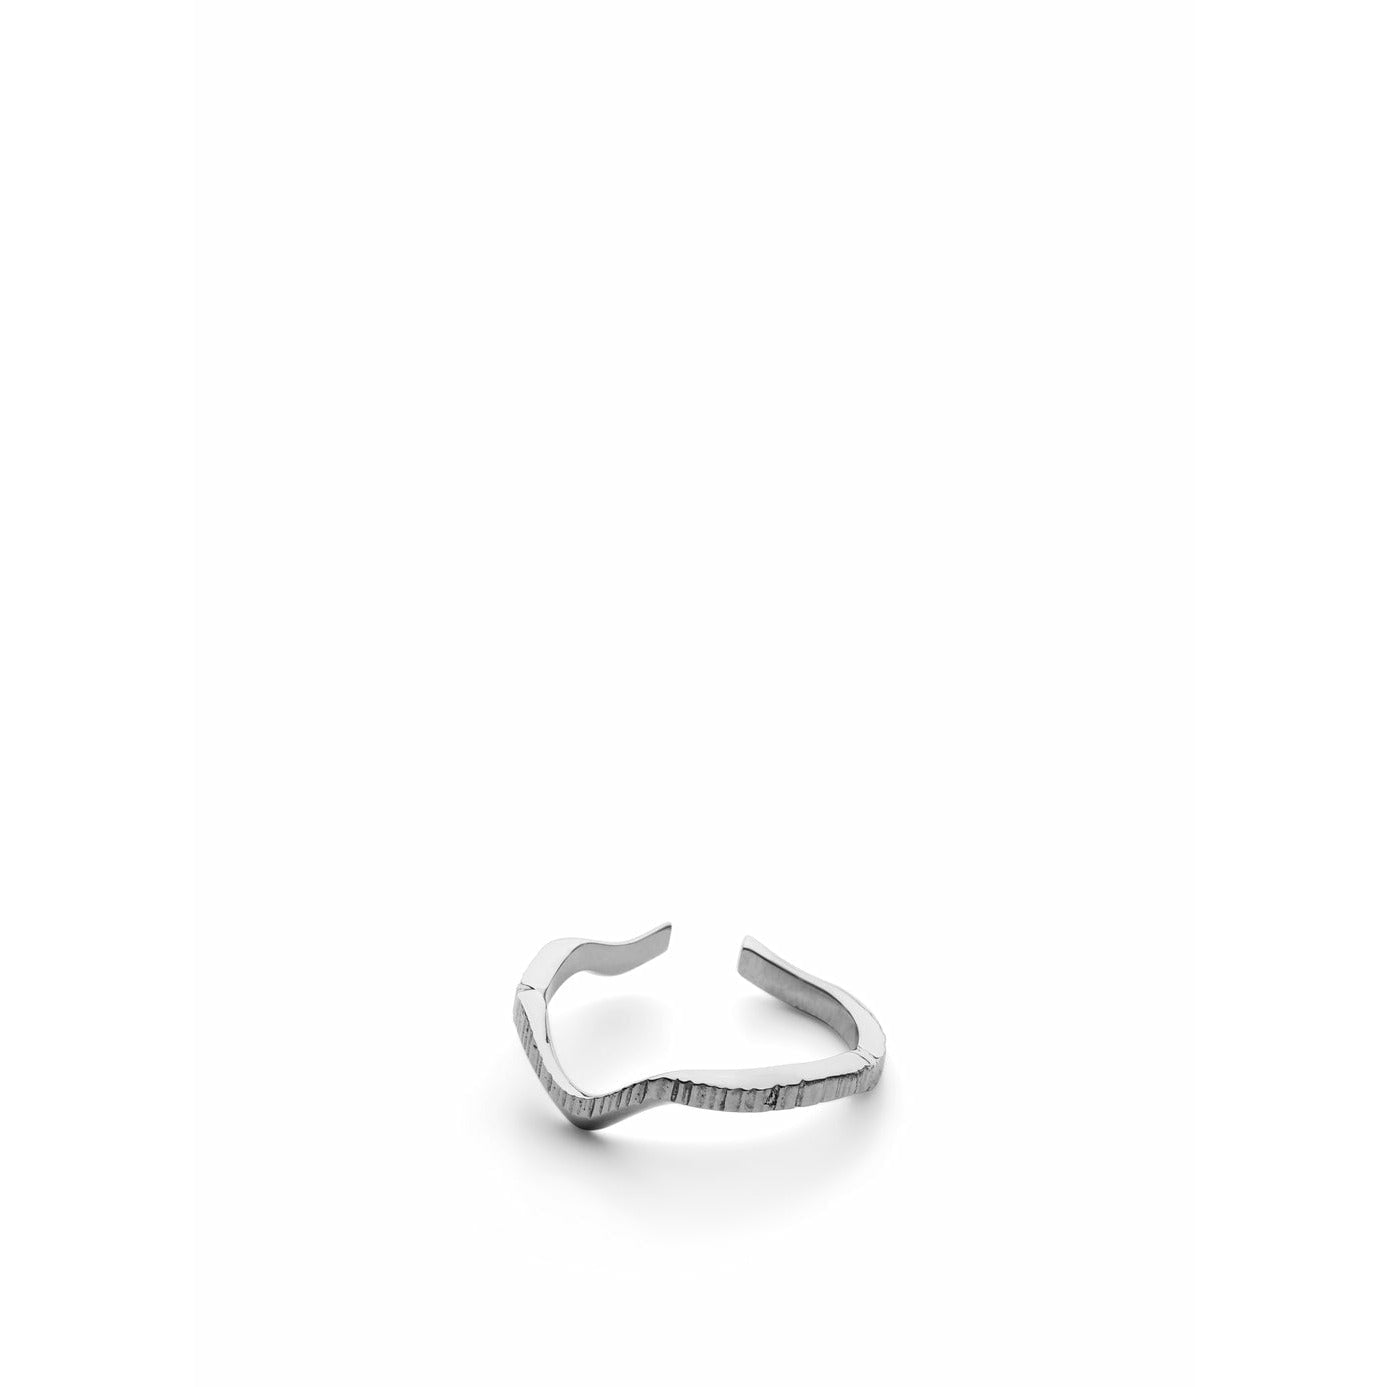 Skultuna Chêne ring klein gepolijst staal, Ø1,6 cm